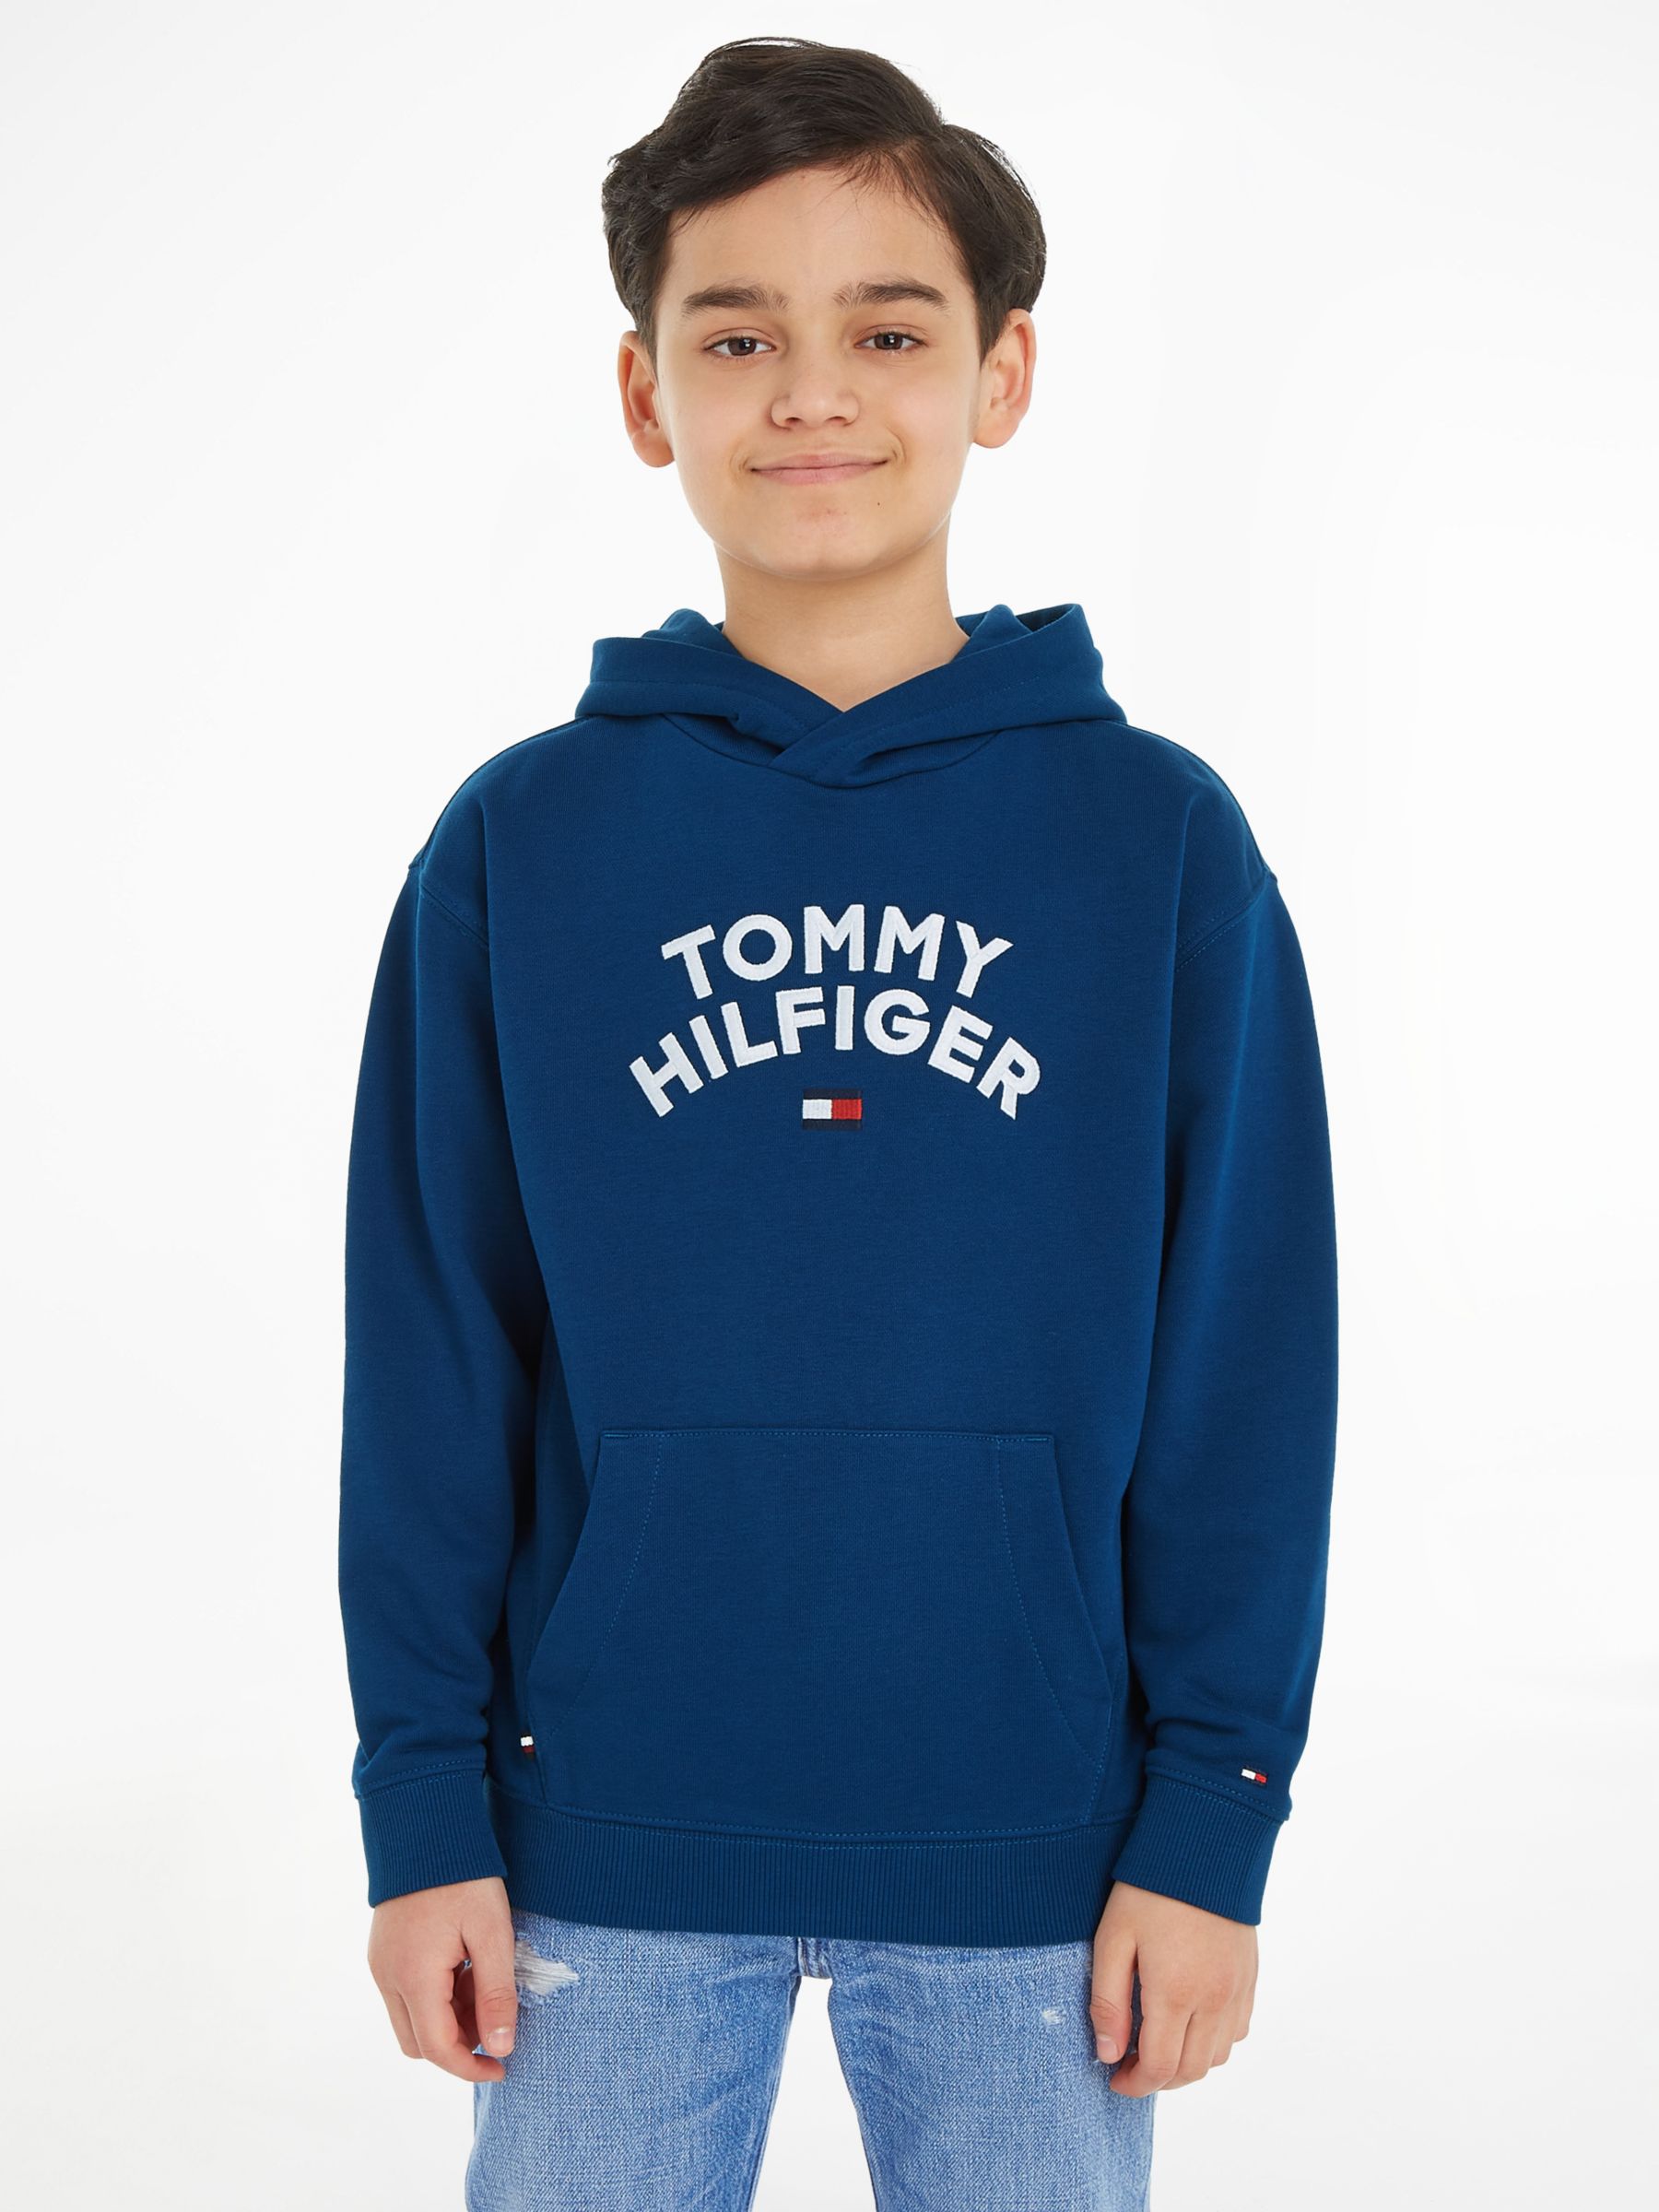 Tommy Hilfiger Kids' Tommy Flag Logo Hoodie, Blue Indigo at John Lewis ...